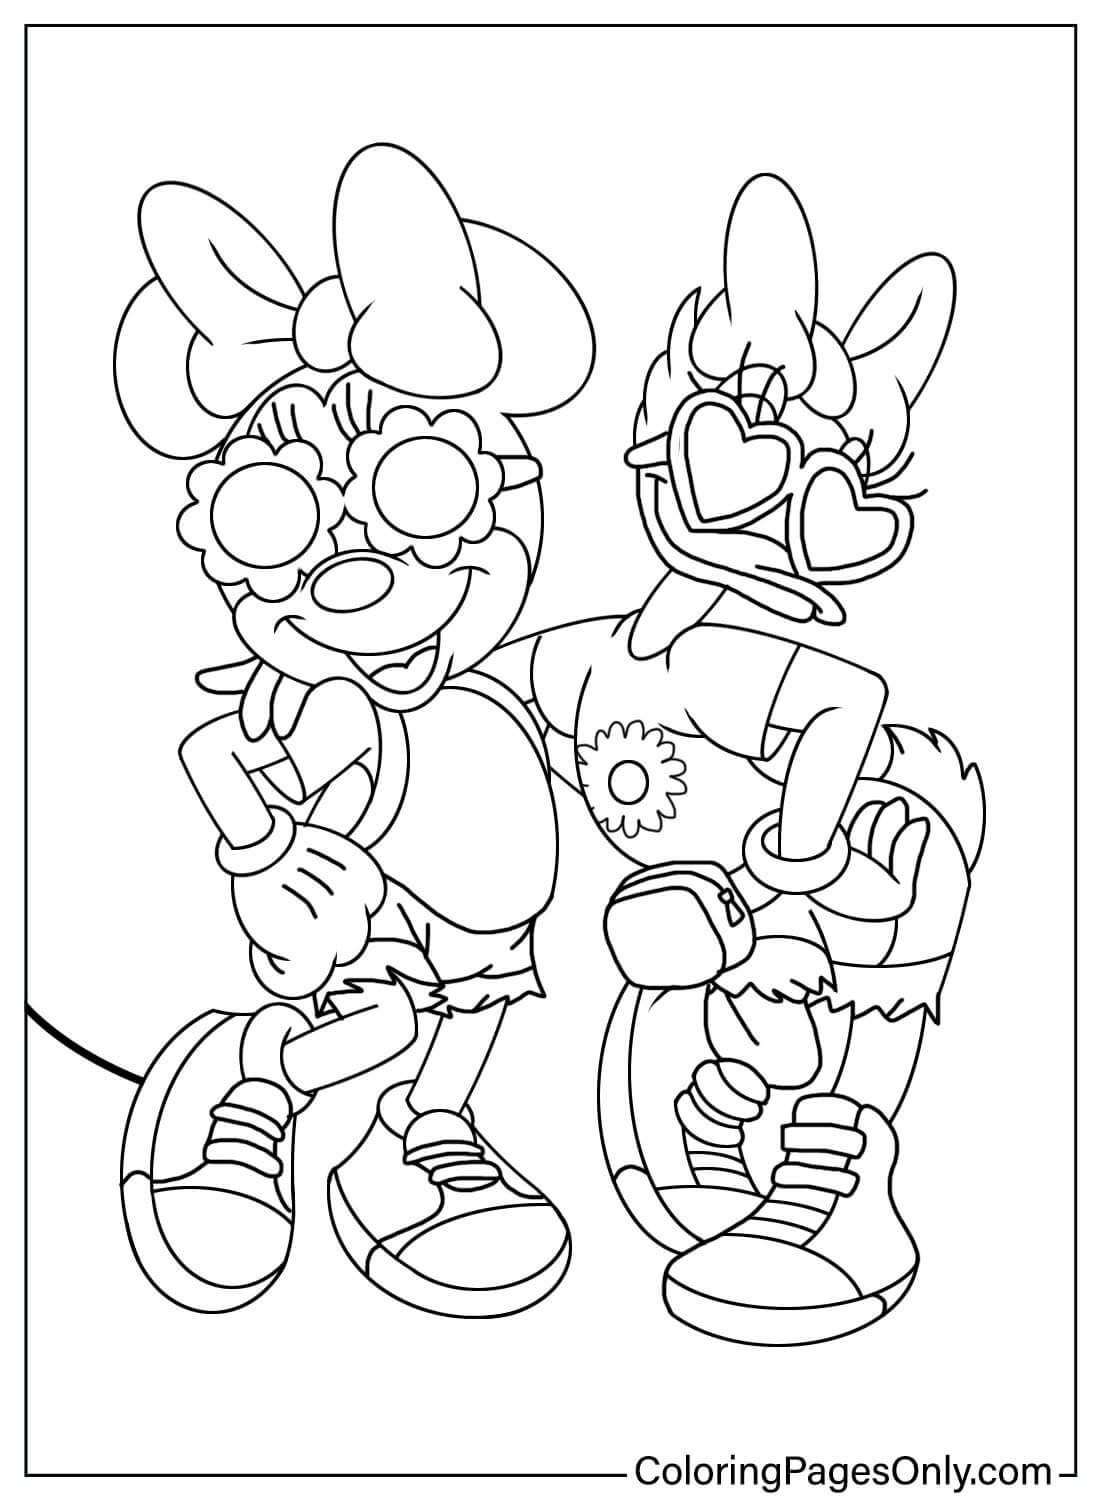 Página para colorear de Minnie Mouse y la pato Daisy de Minnie Mouse